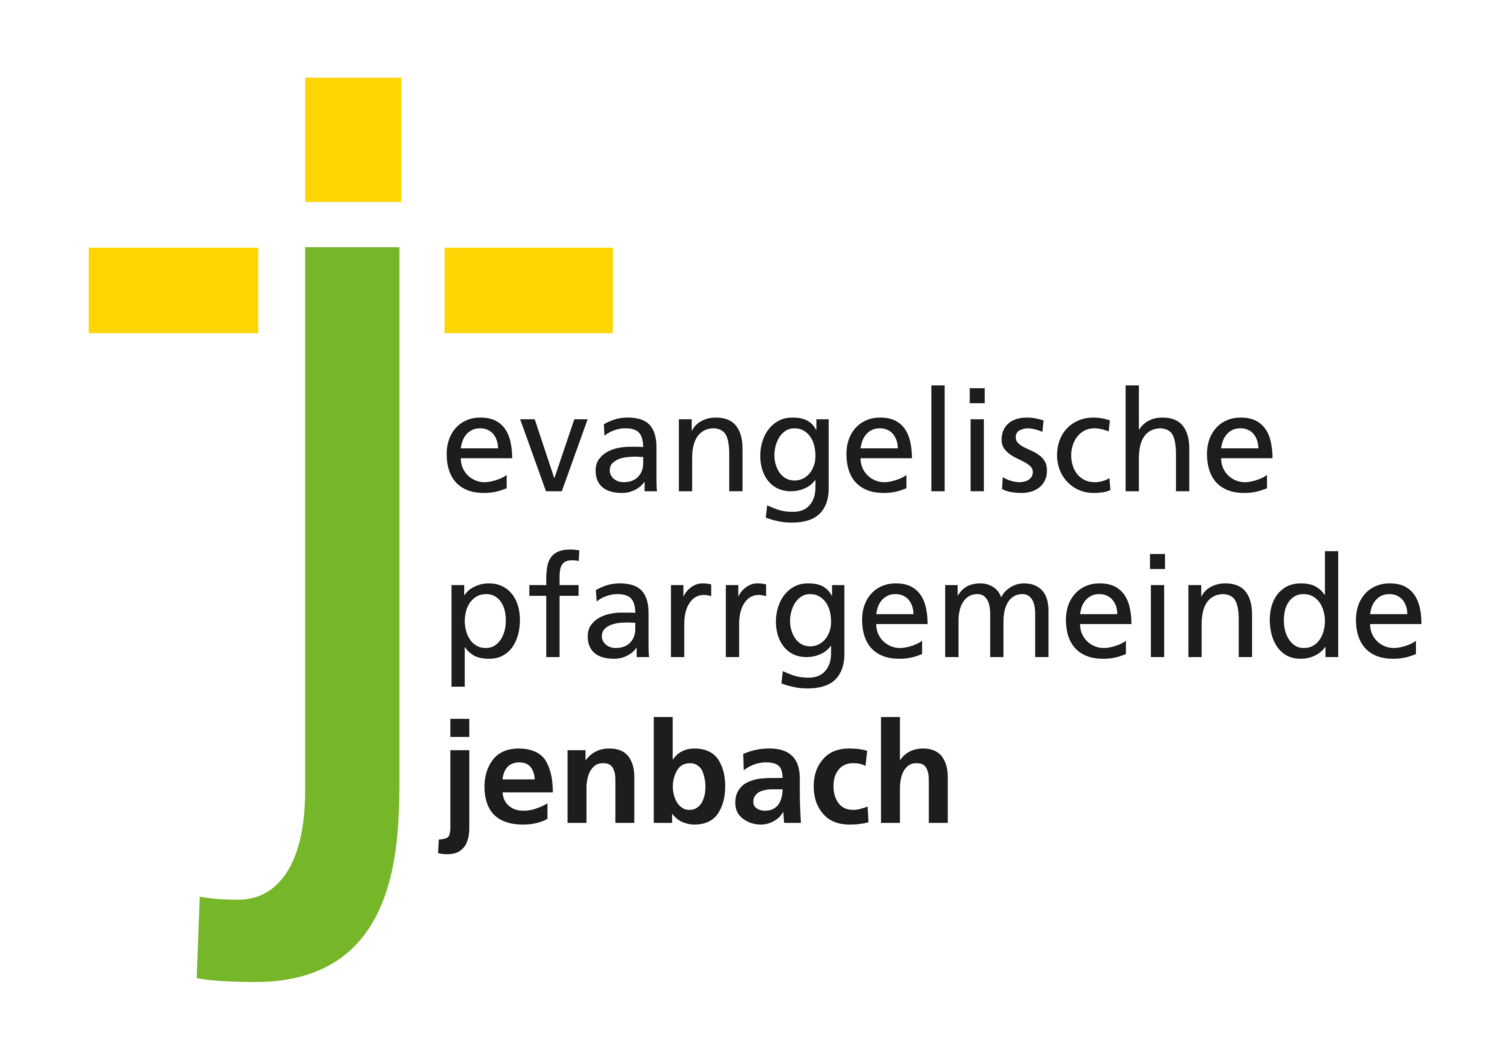 Evangelische Gemeinde Jenbach